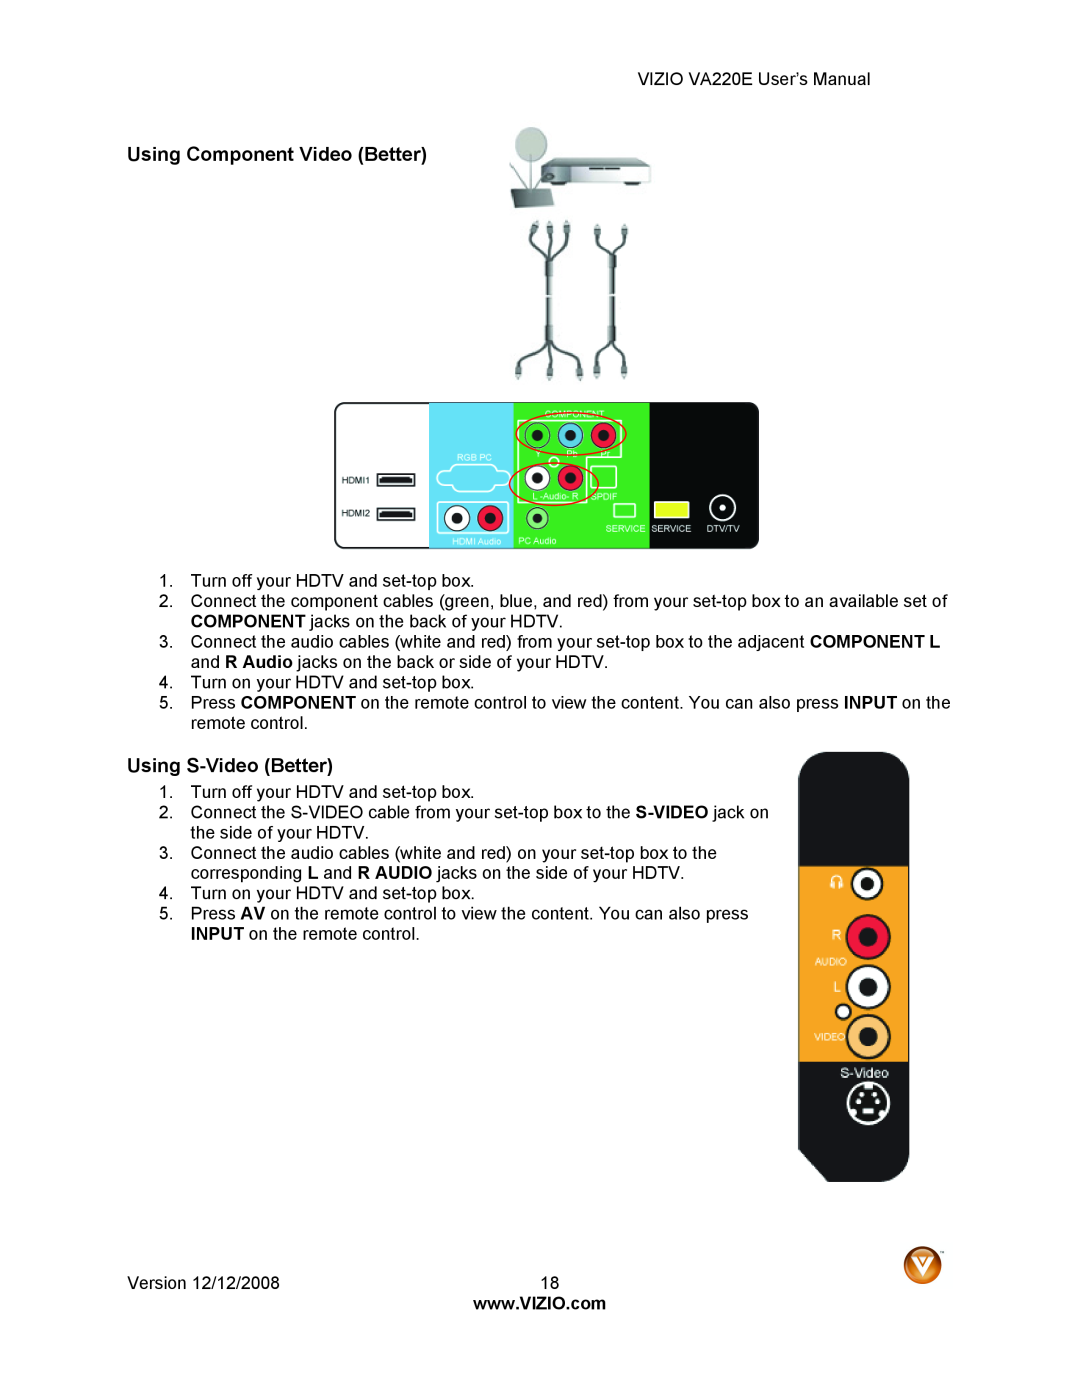 Vizio VA220E user manual Using Component Video Better, Using S-Video Better 